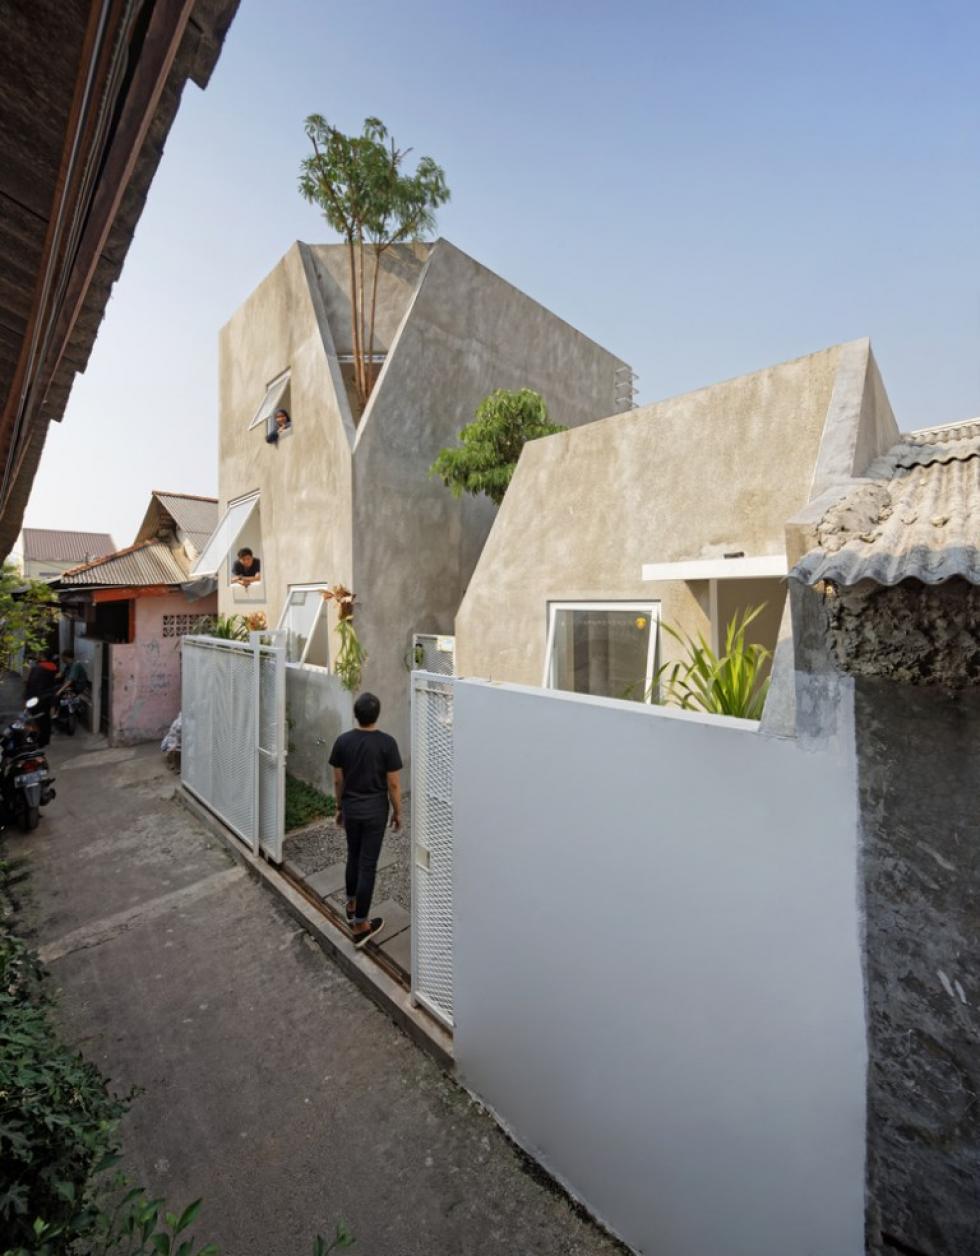 Ikerház helyett “testvérház” megközelítést alkalmazott az indonéz építészeti cég